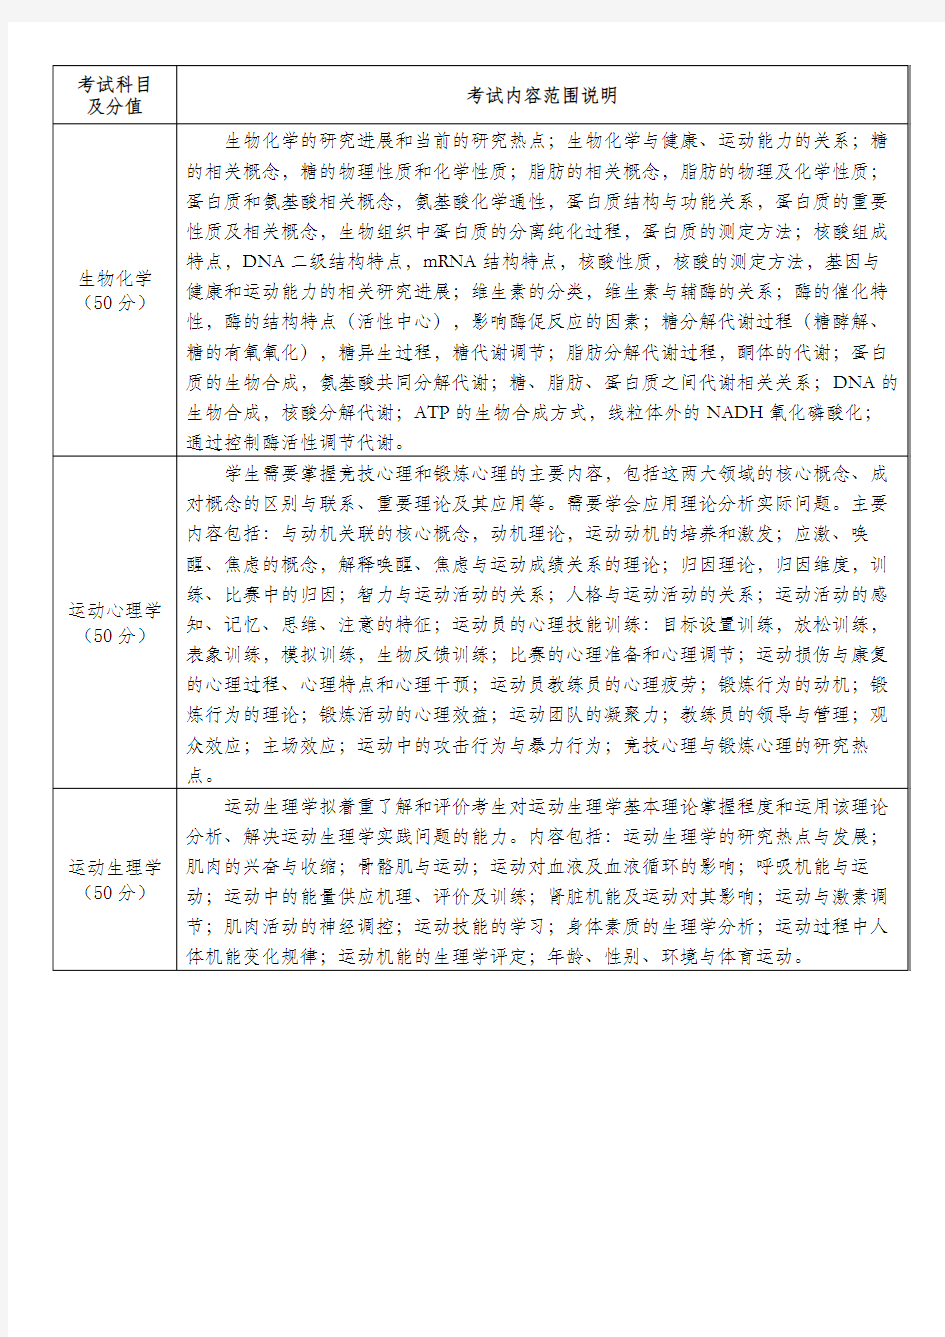 北京体育大学2019年博士研究生考试科目内容范围说明